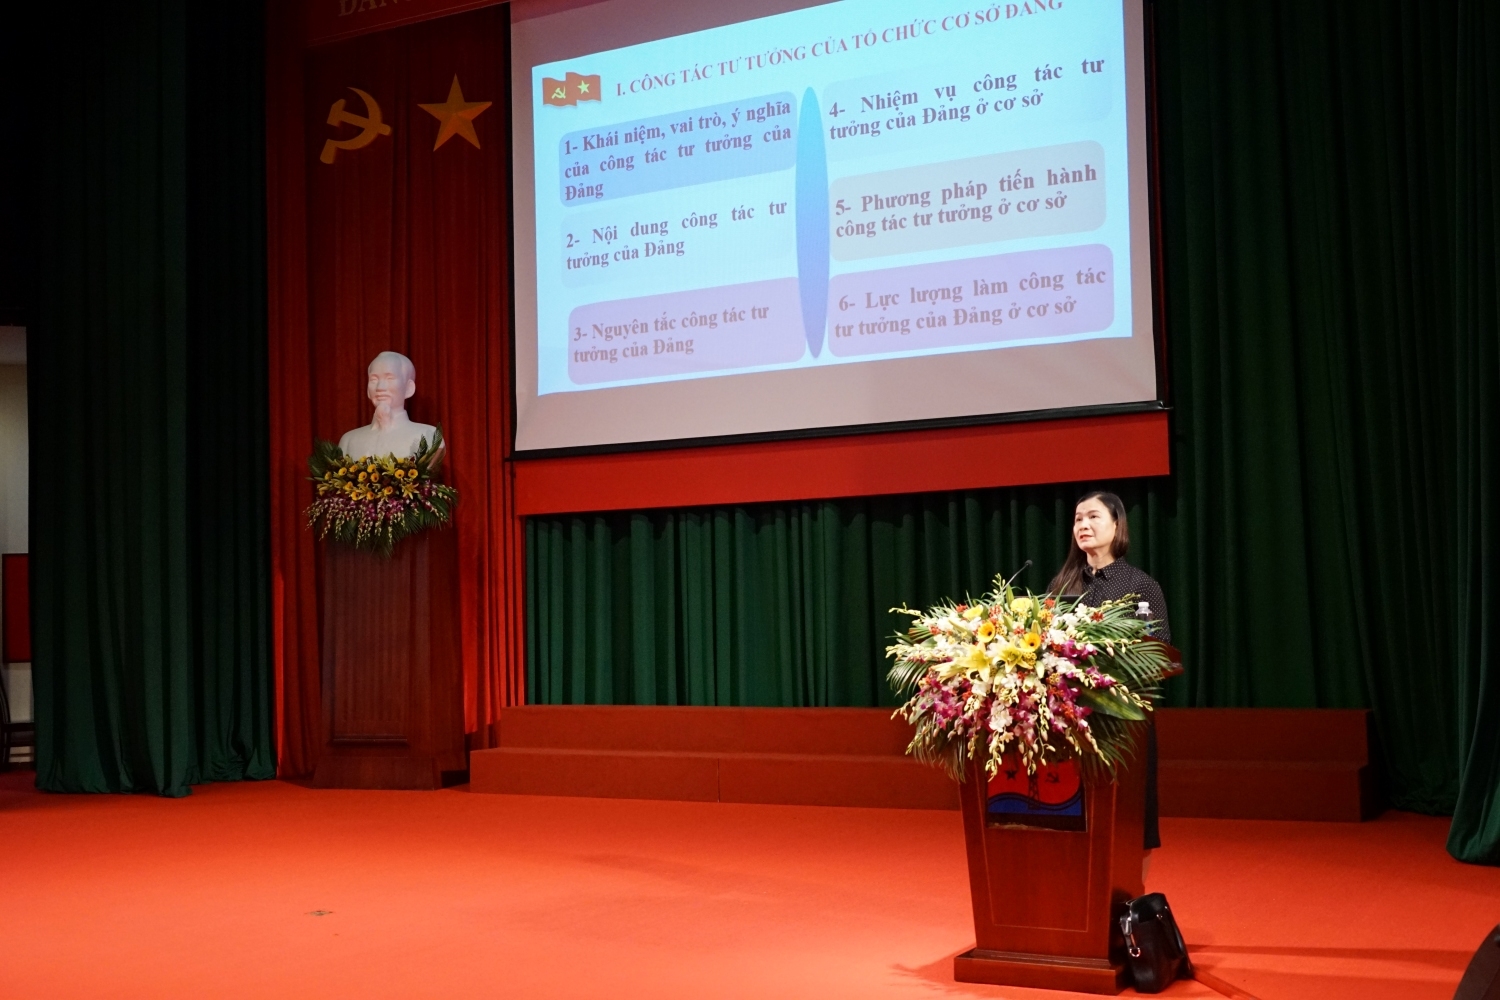 Đảng ủy Tập đoàn Dầu khí Quốc gia Việt Nam khai giảng lớp bồi dưỡng nghiệp vụ công tác Đảng cho Bí thư chi bộ và cấp ủy viên cơ sở năm 2023 khu vực TP Vũng Tàu